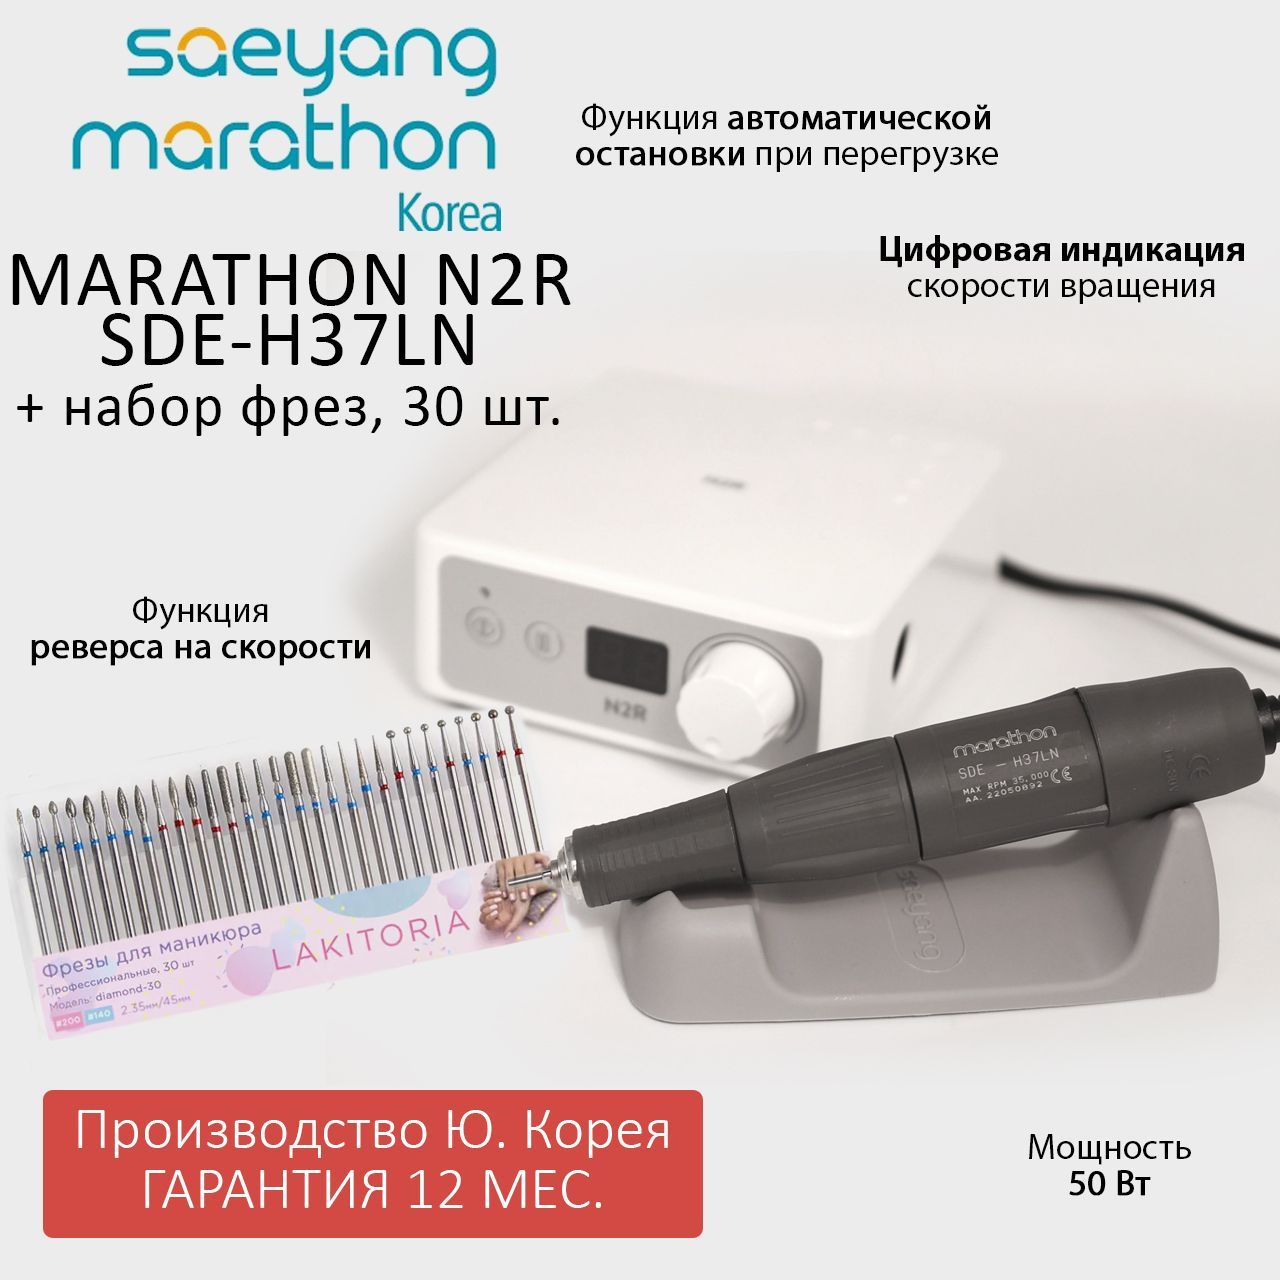 Аппарат для маникюра Marathon N2R SDE-H37LN без педали и набор фрез для маникюра 30шт chelay инструмент для чистки лица косметологический набор 4 предмета